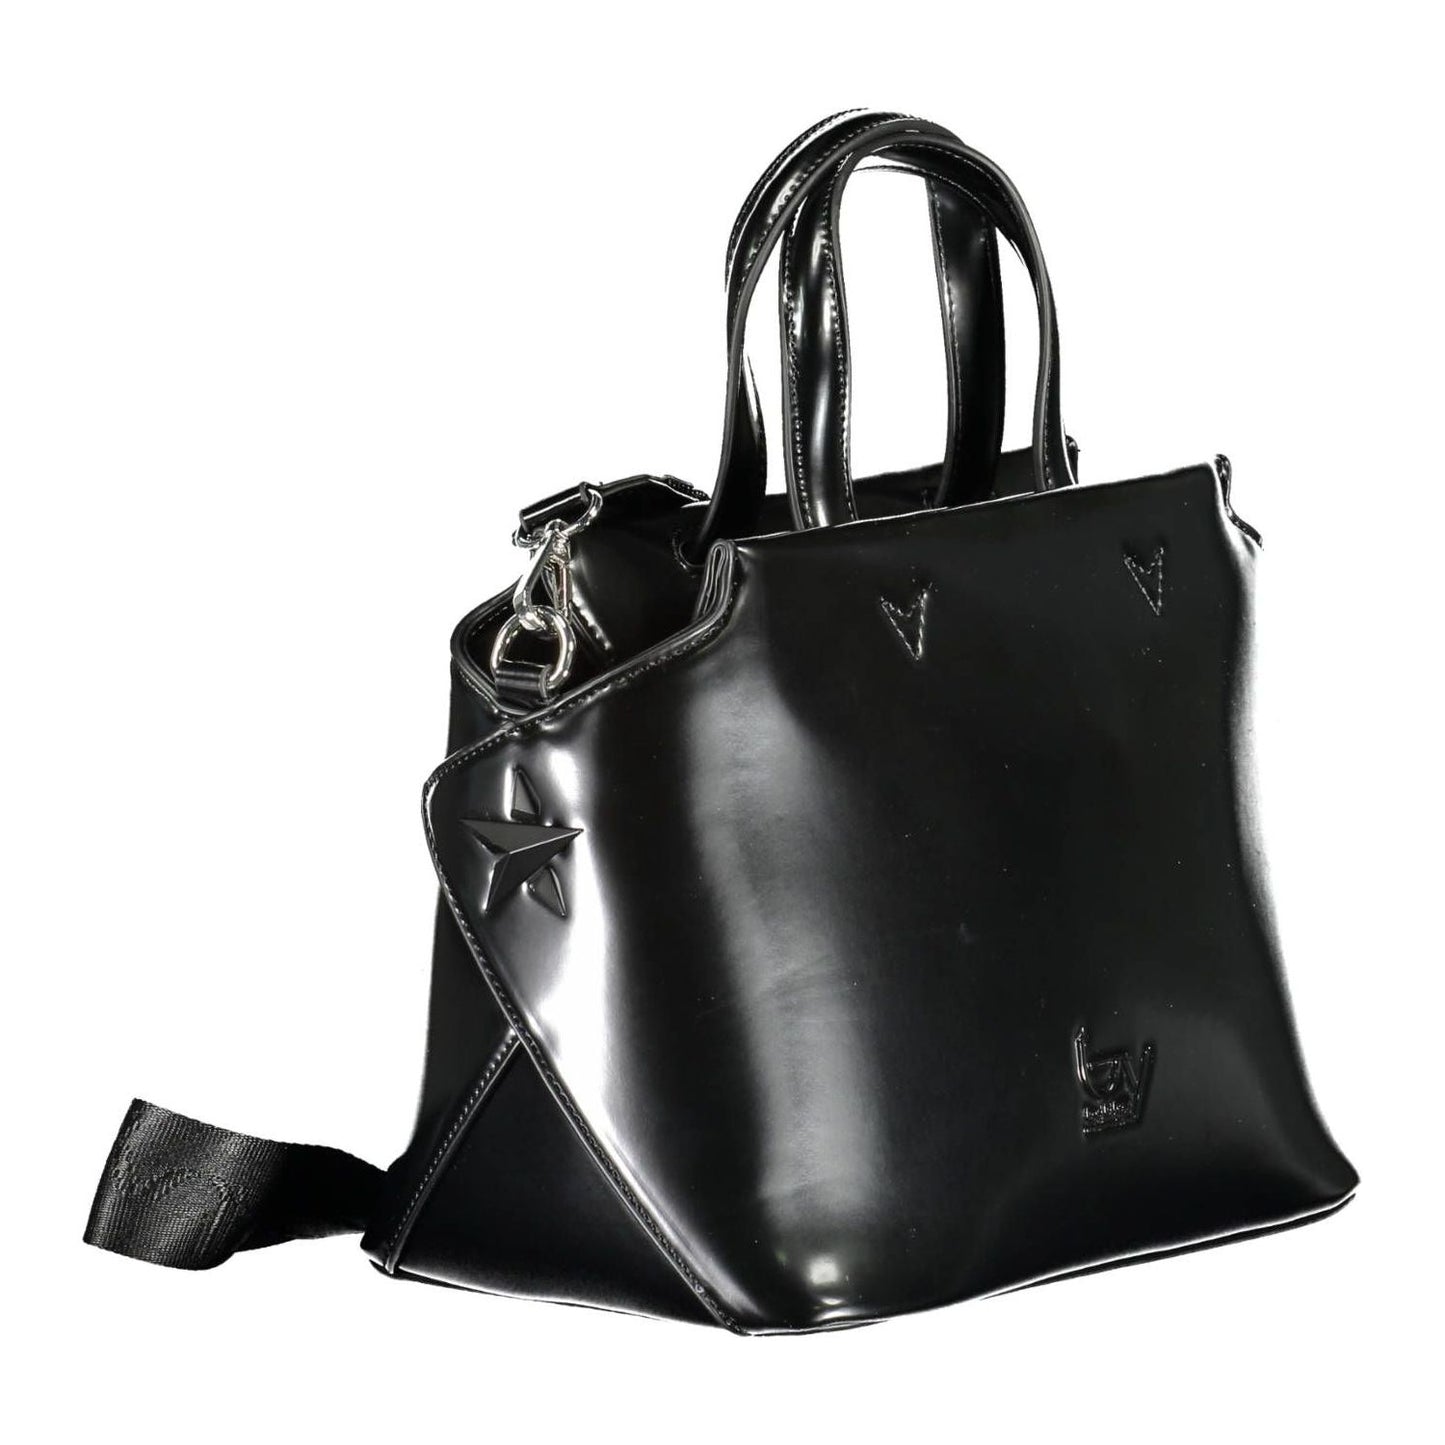 BYBLOS Elegant Black Two-Handle Bag with Contrasting Details elegant-black-two-handle-bag-with-contrasting-details-1